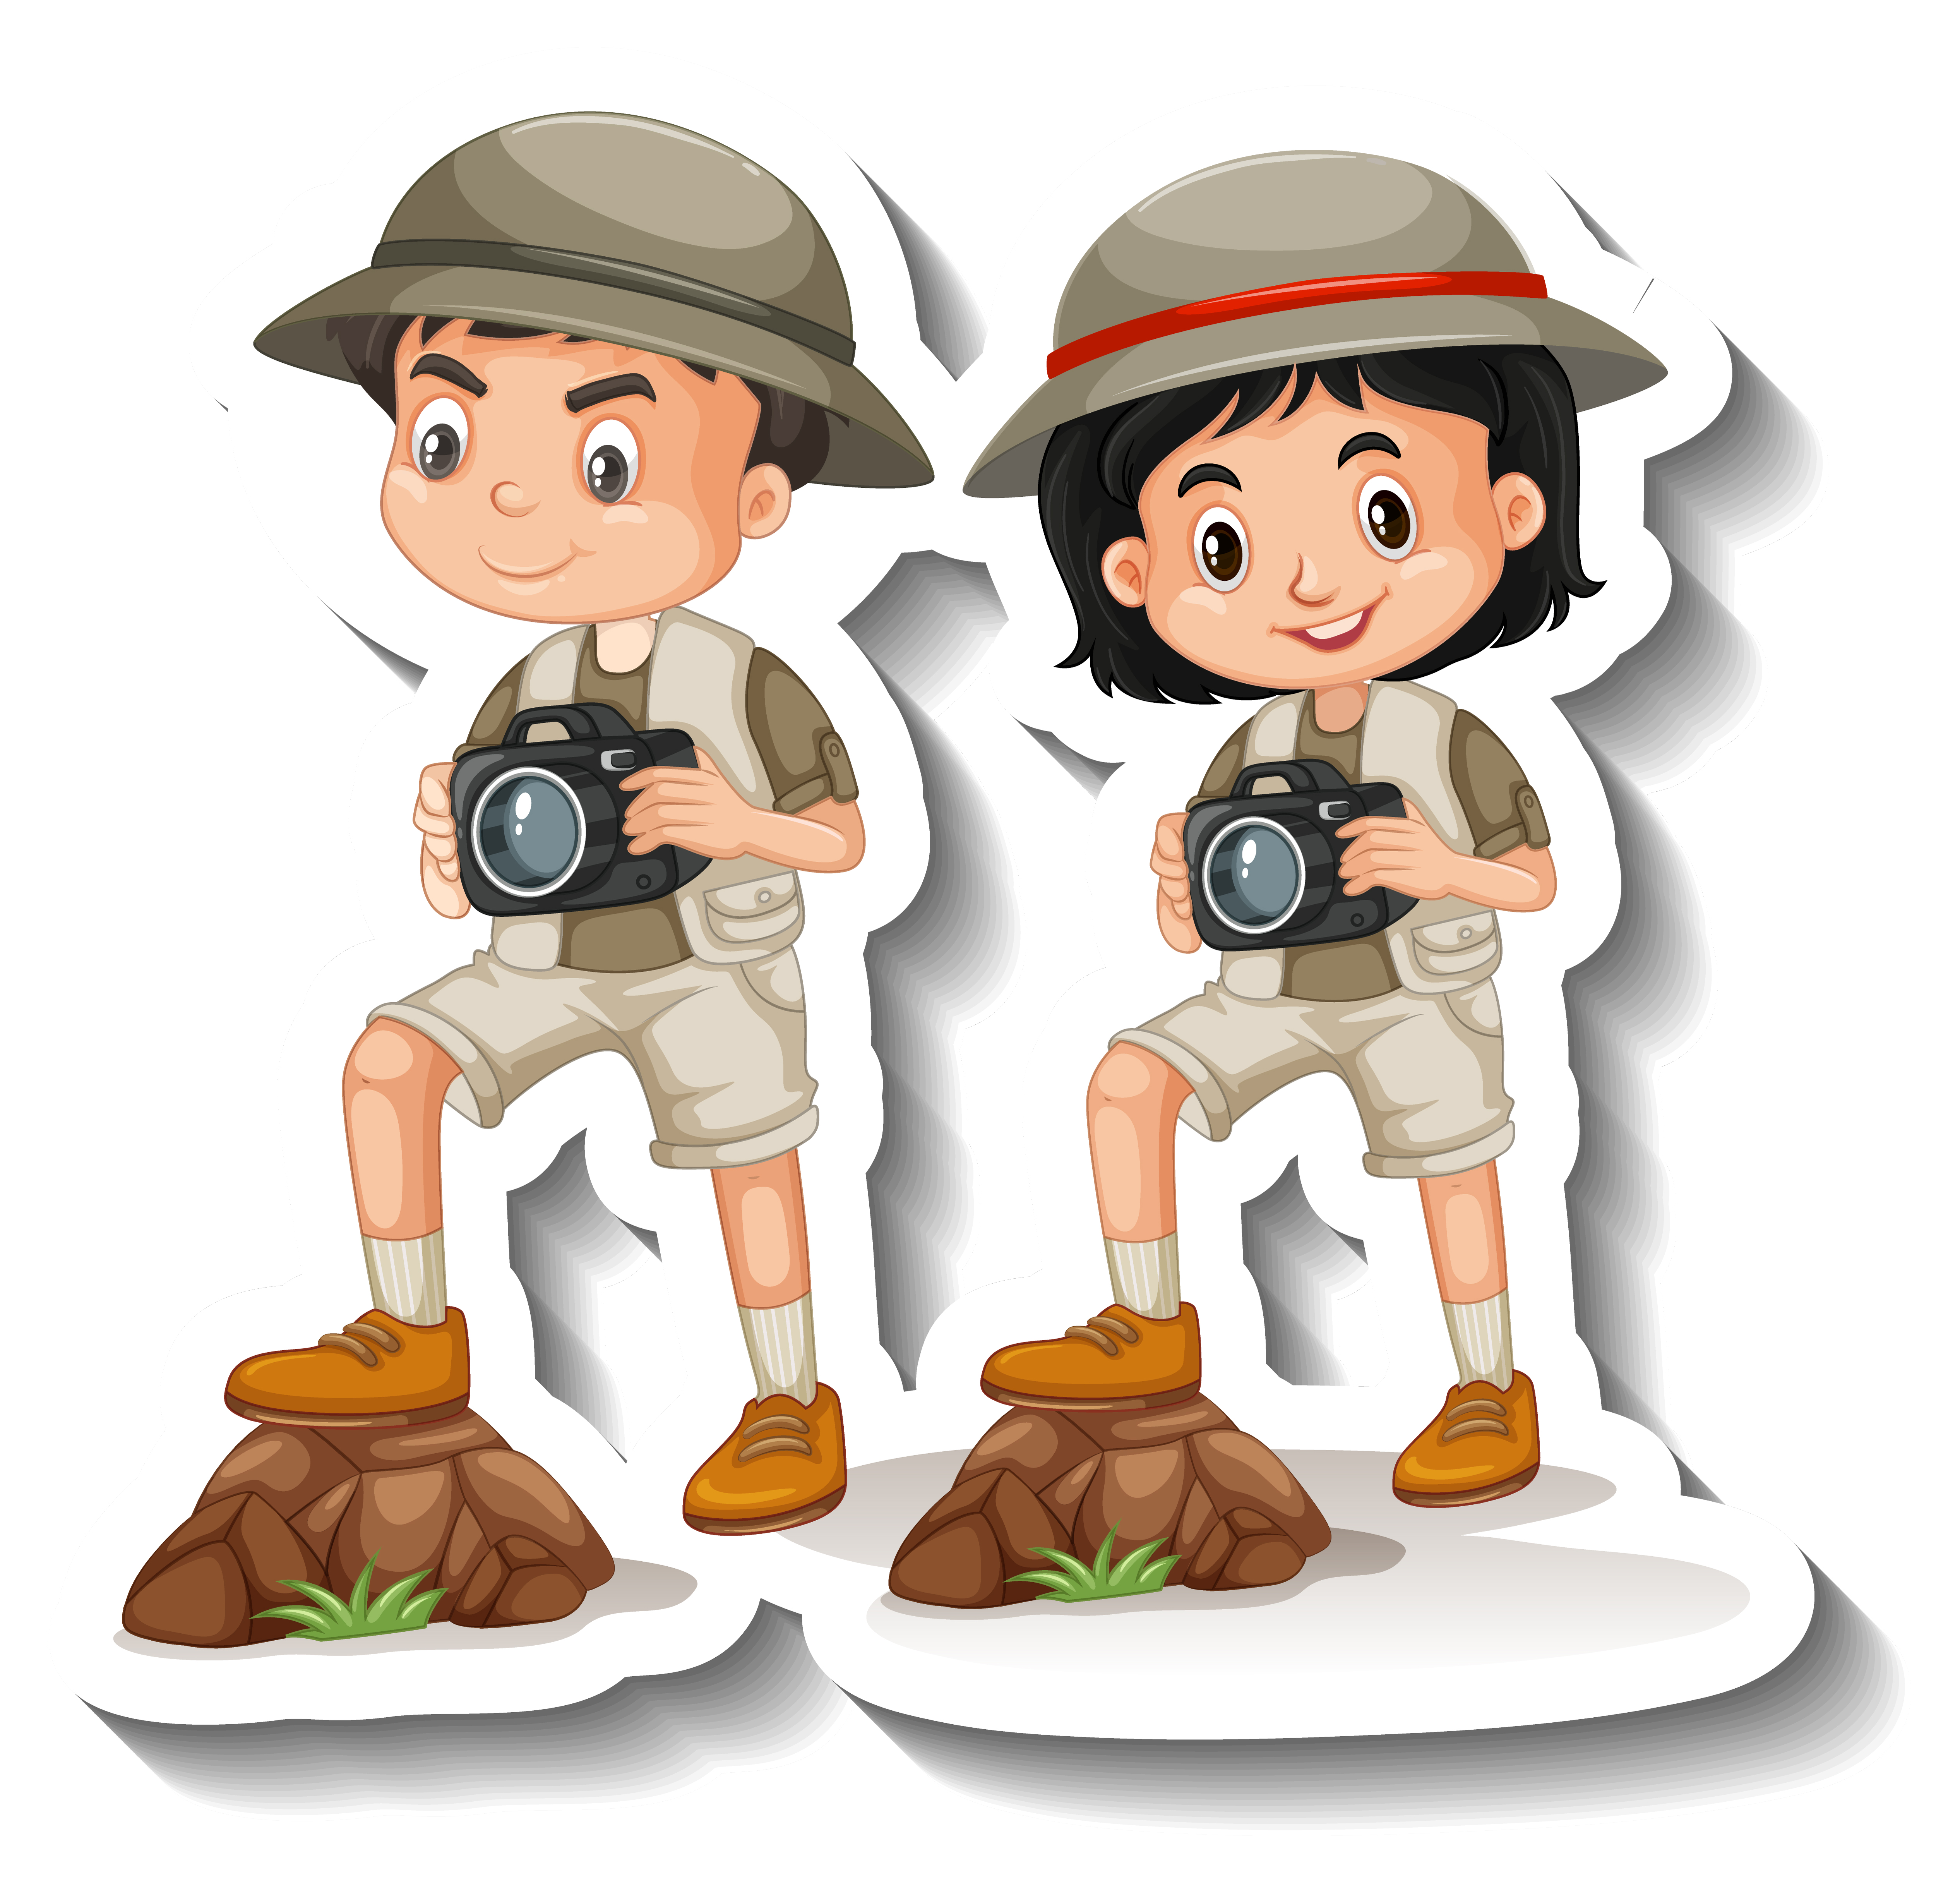 Niño y niña vestidos de exploradores con cámaras fotográficas en sus manos